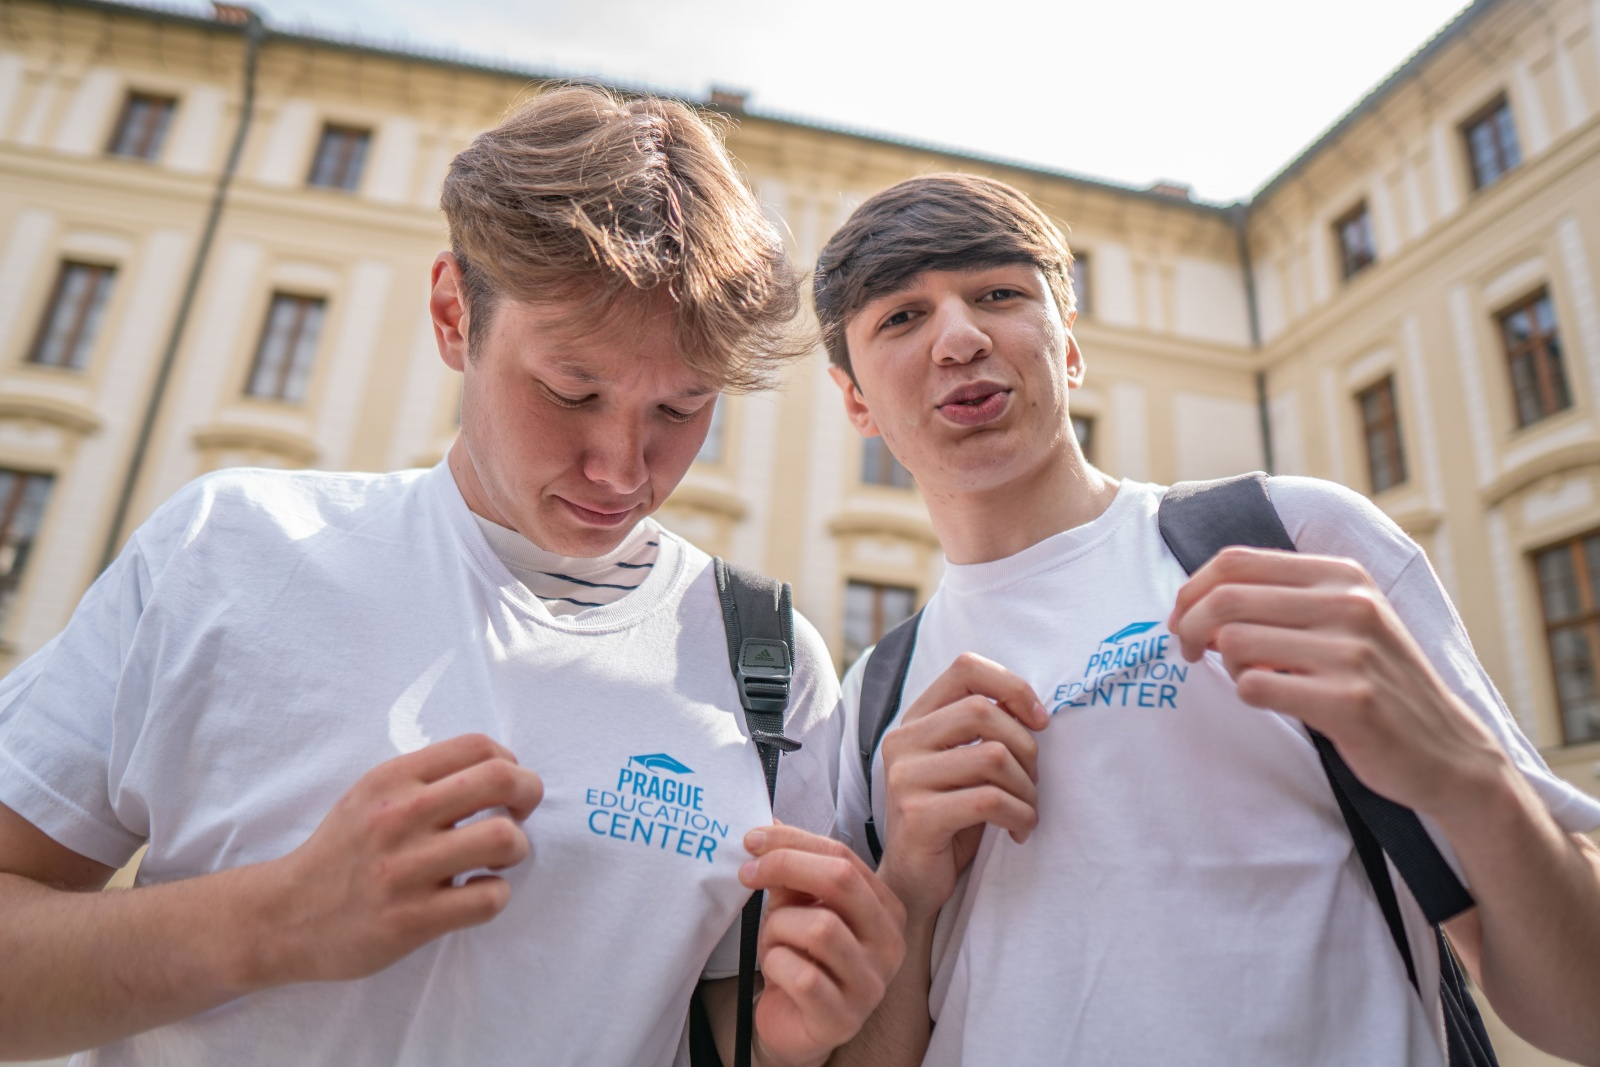 Образование в словацких университетах является качественным и подготавливает студентов к успешной карьере в гуманитарных и социальных науках.